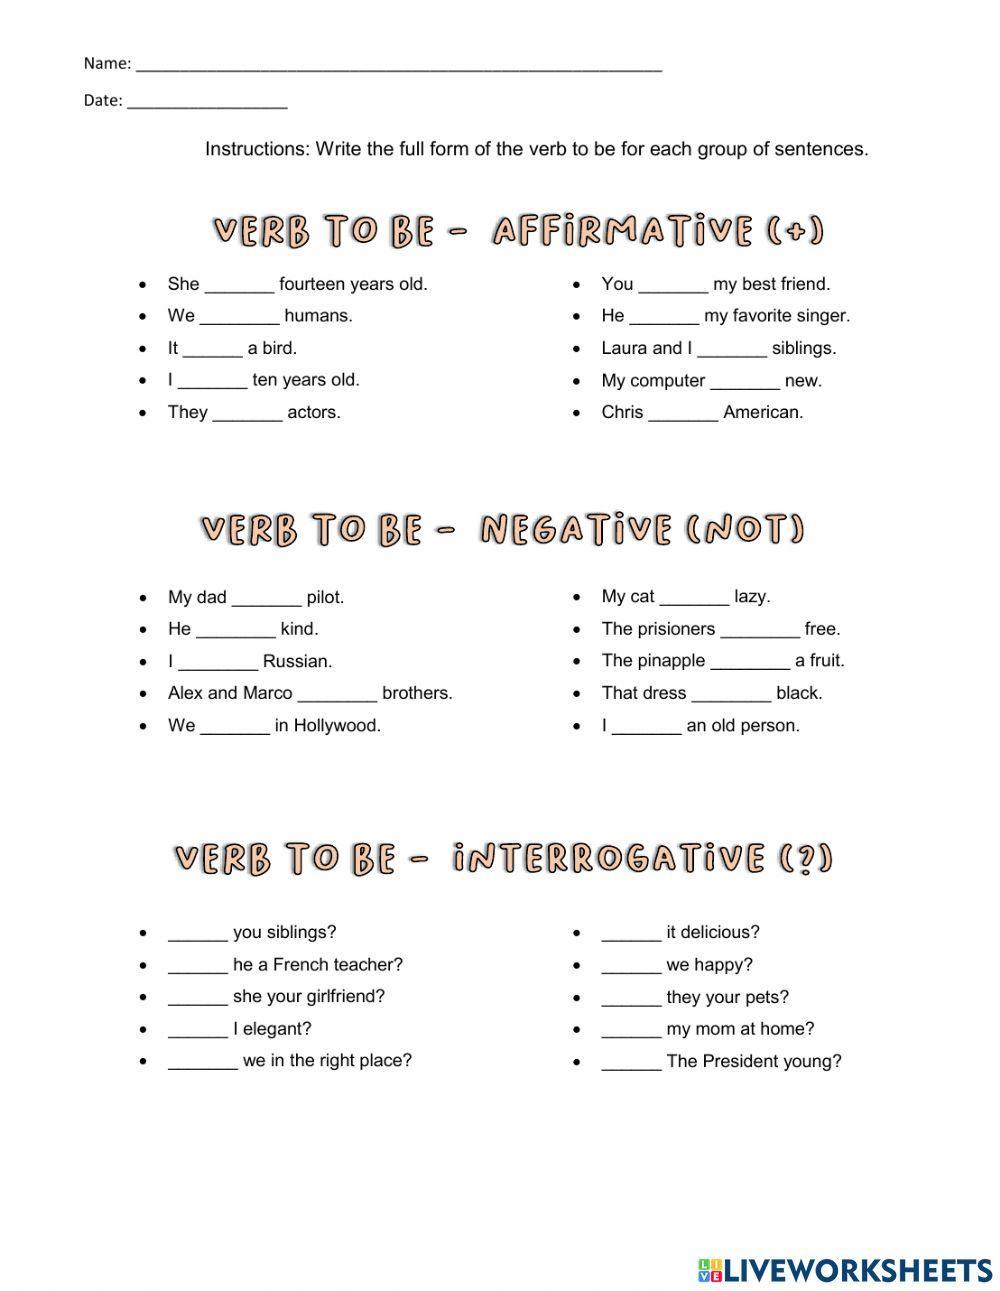 verb-to-be-affirmative-negative-interrogative-worksheet-live-worksheets